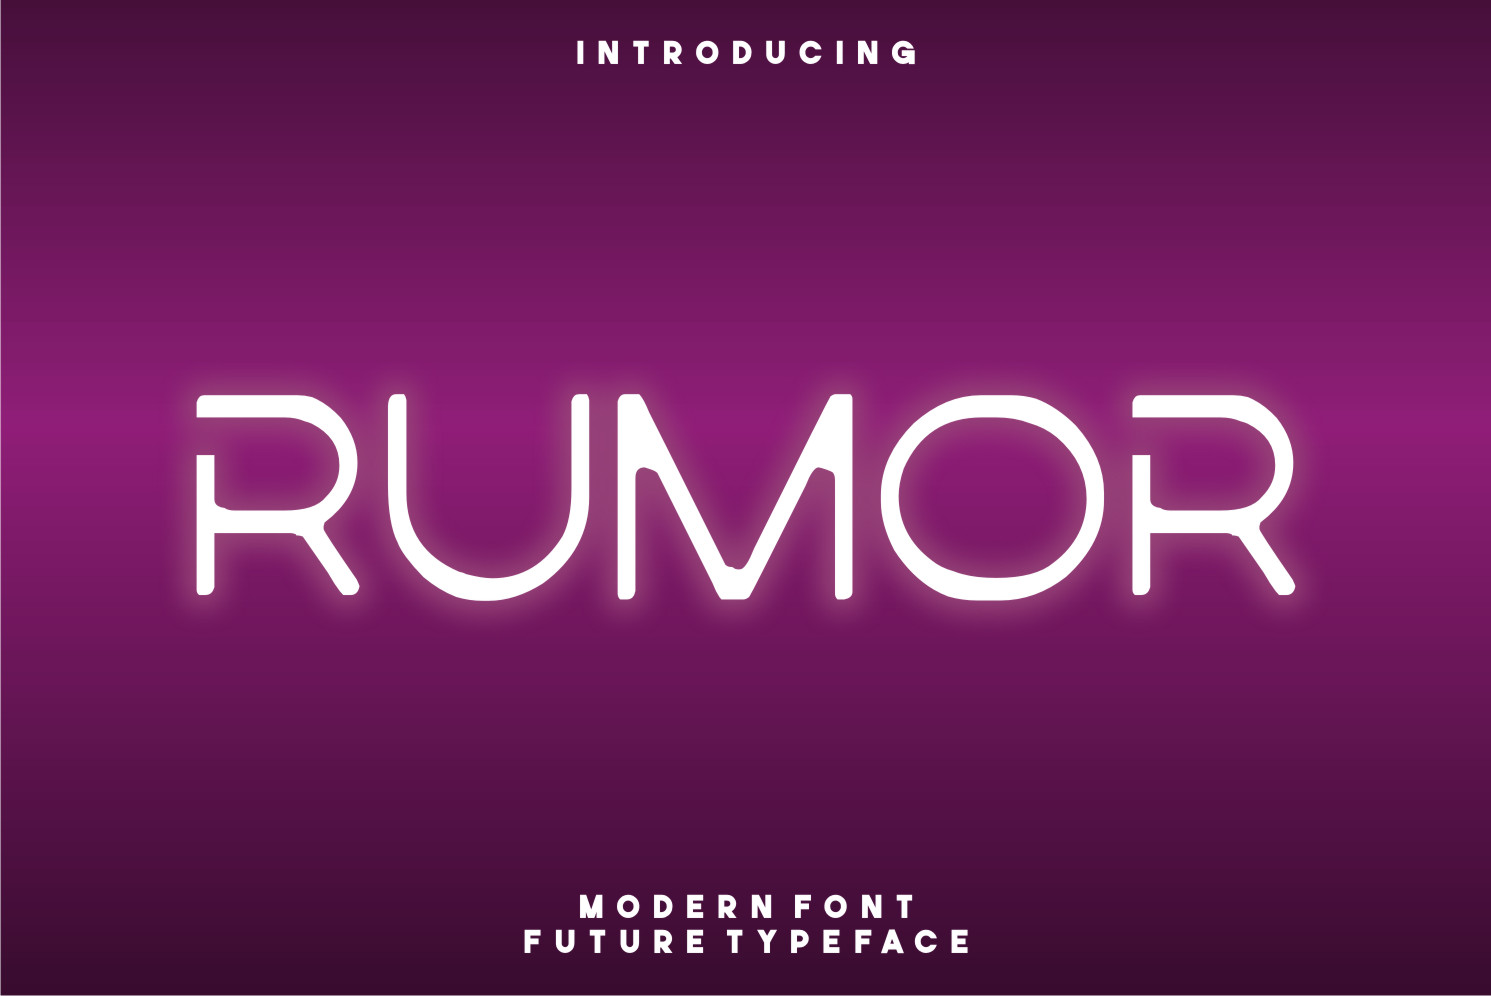 Rumor Display Font